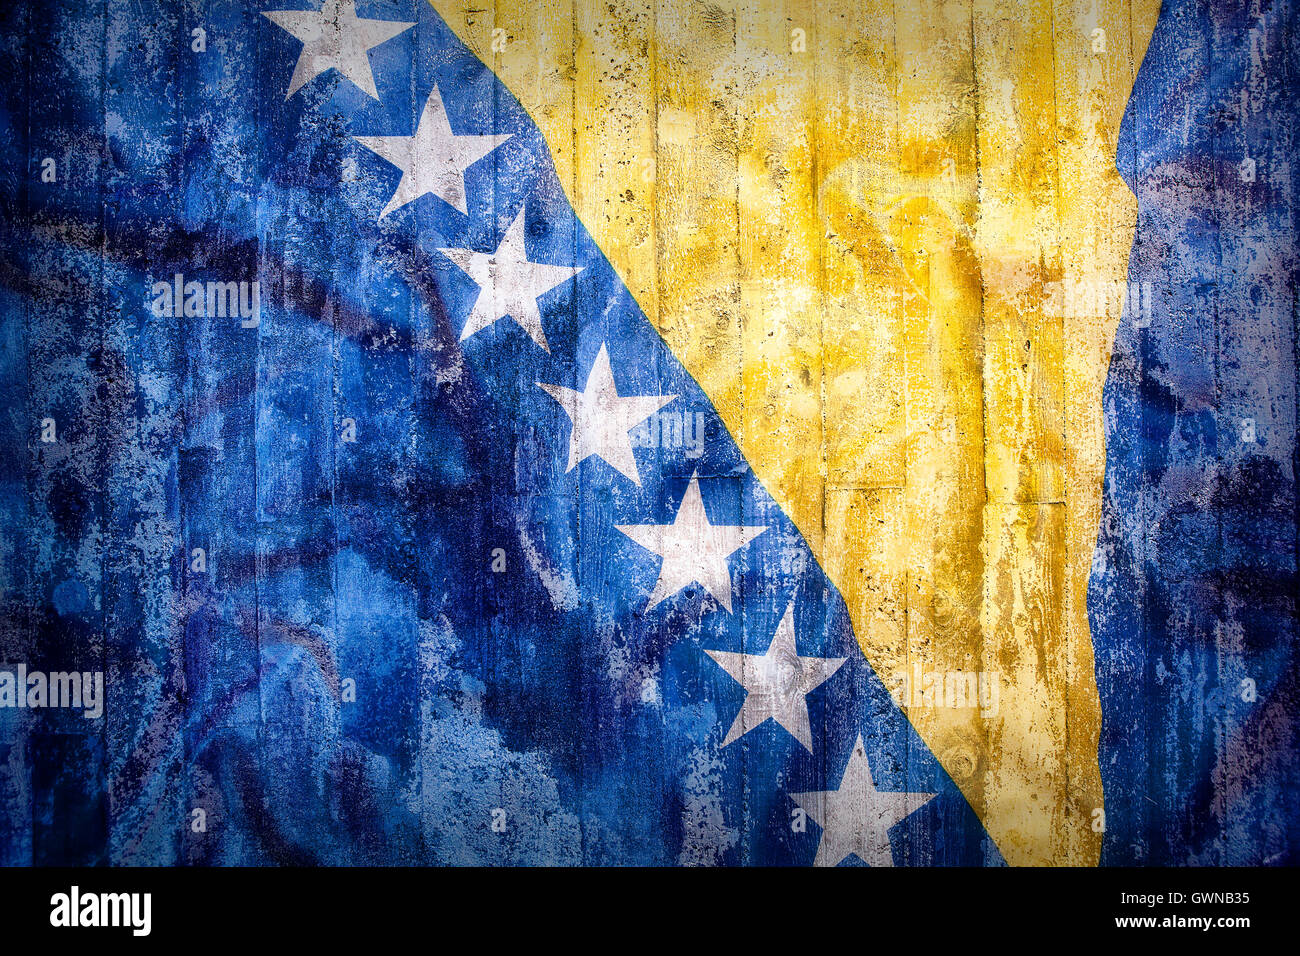 Grunge-Stil von Bosnien und Herzegowina Fahne auf eine Mauer für Hintergrund Stockfoto